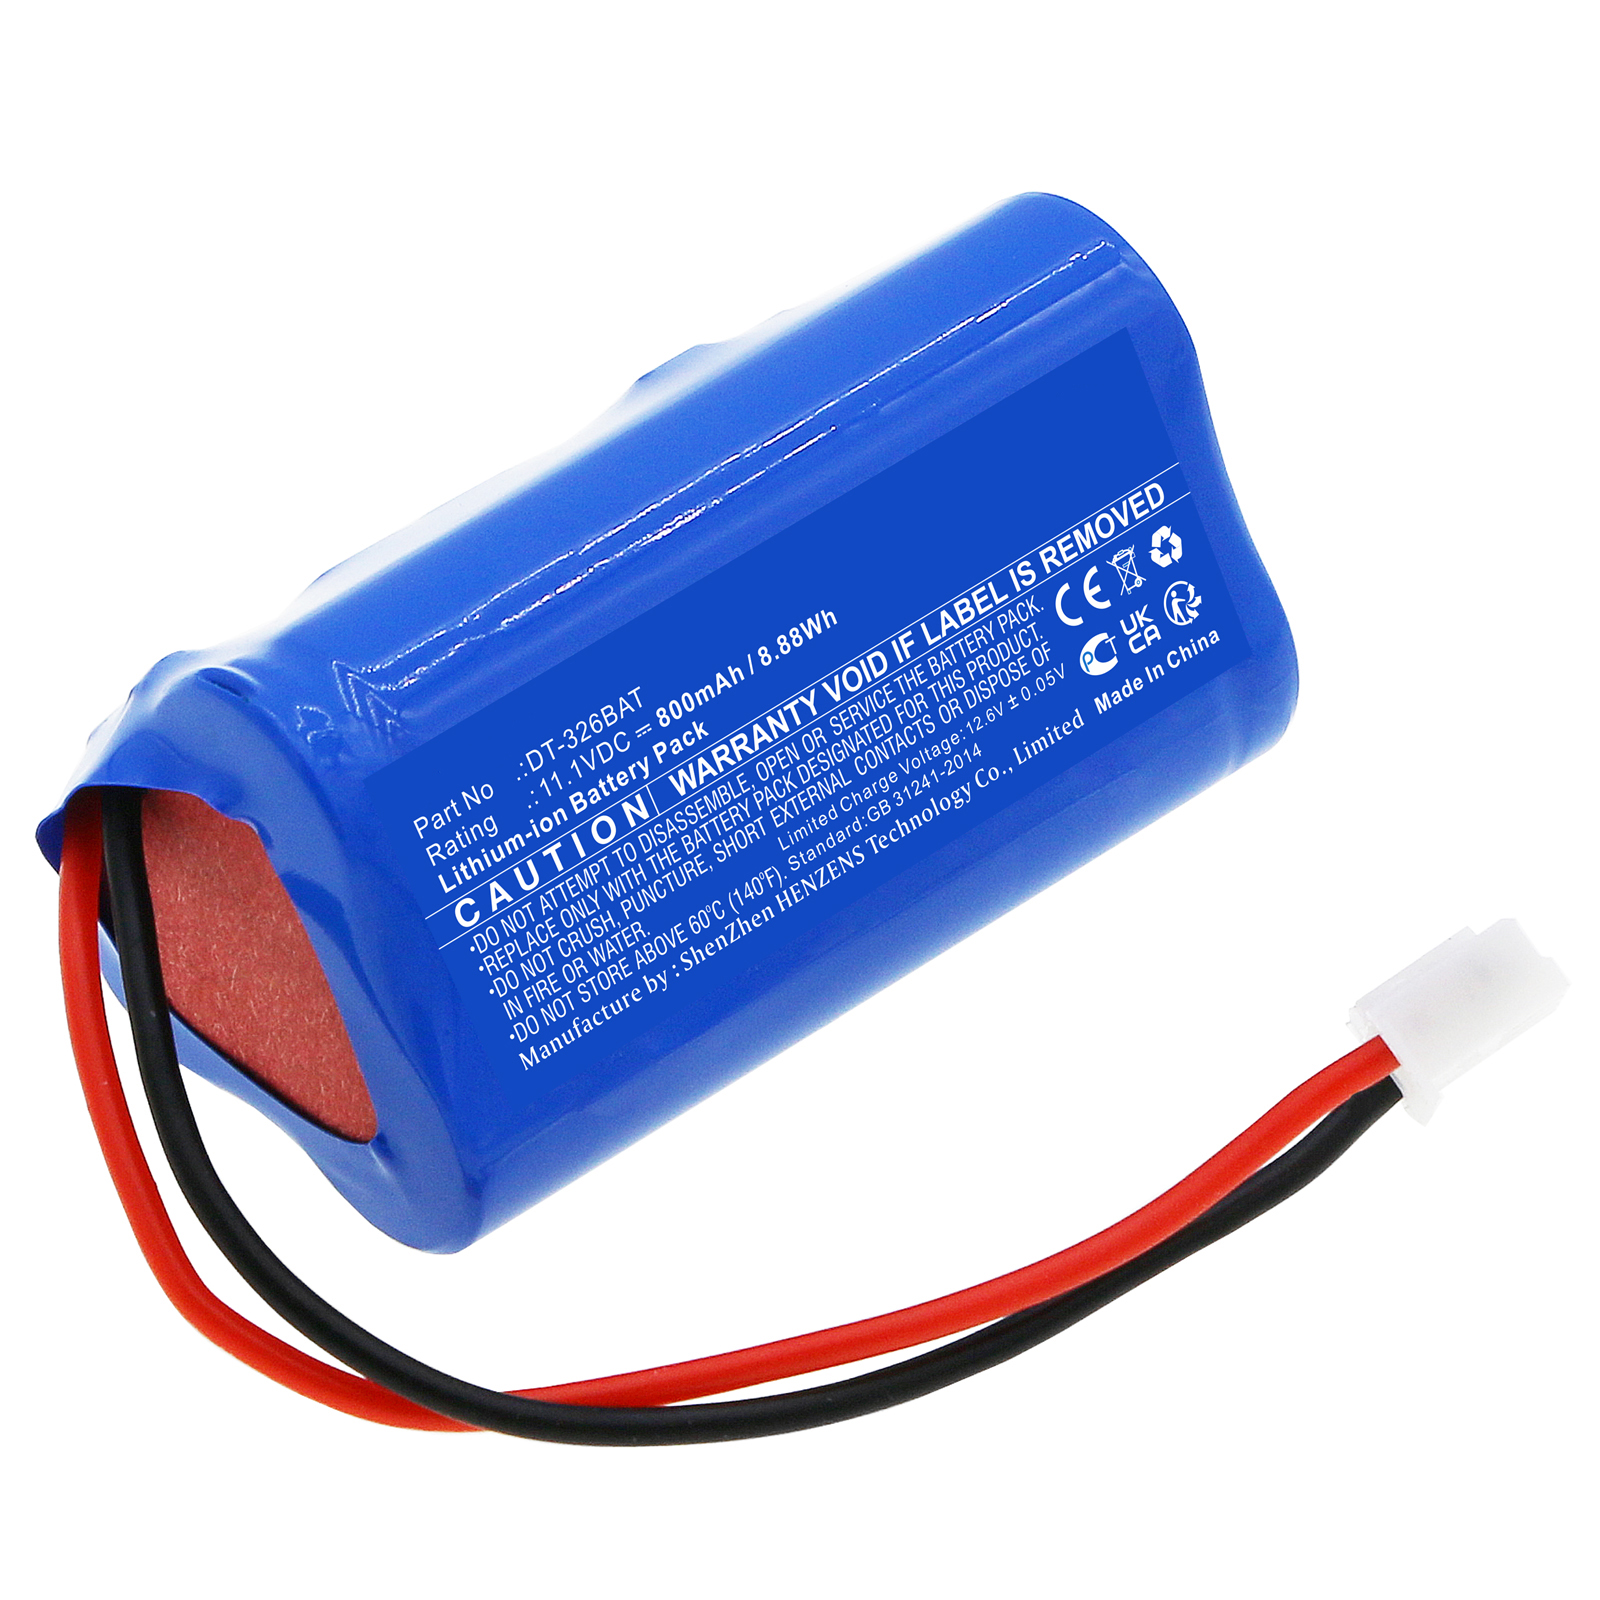 Synergy Digital Vacuum Cleaner Battery, Compatible with Shimpo DT-326BAT Vacuum Cleaner Battery (Li-ion, 11.1V, 800mAh)